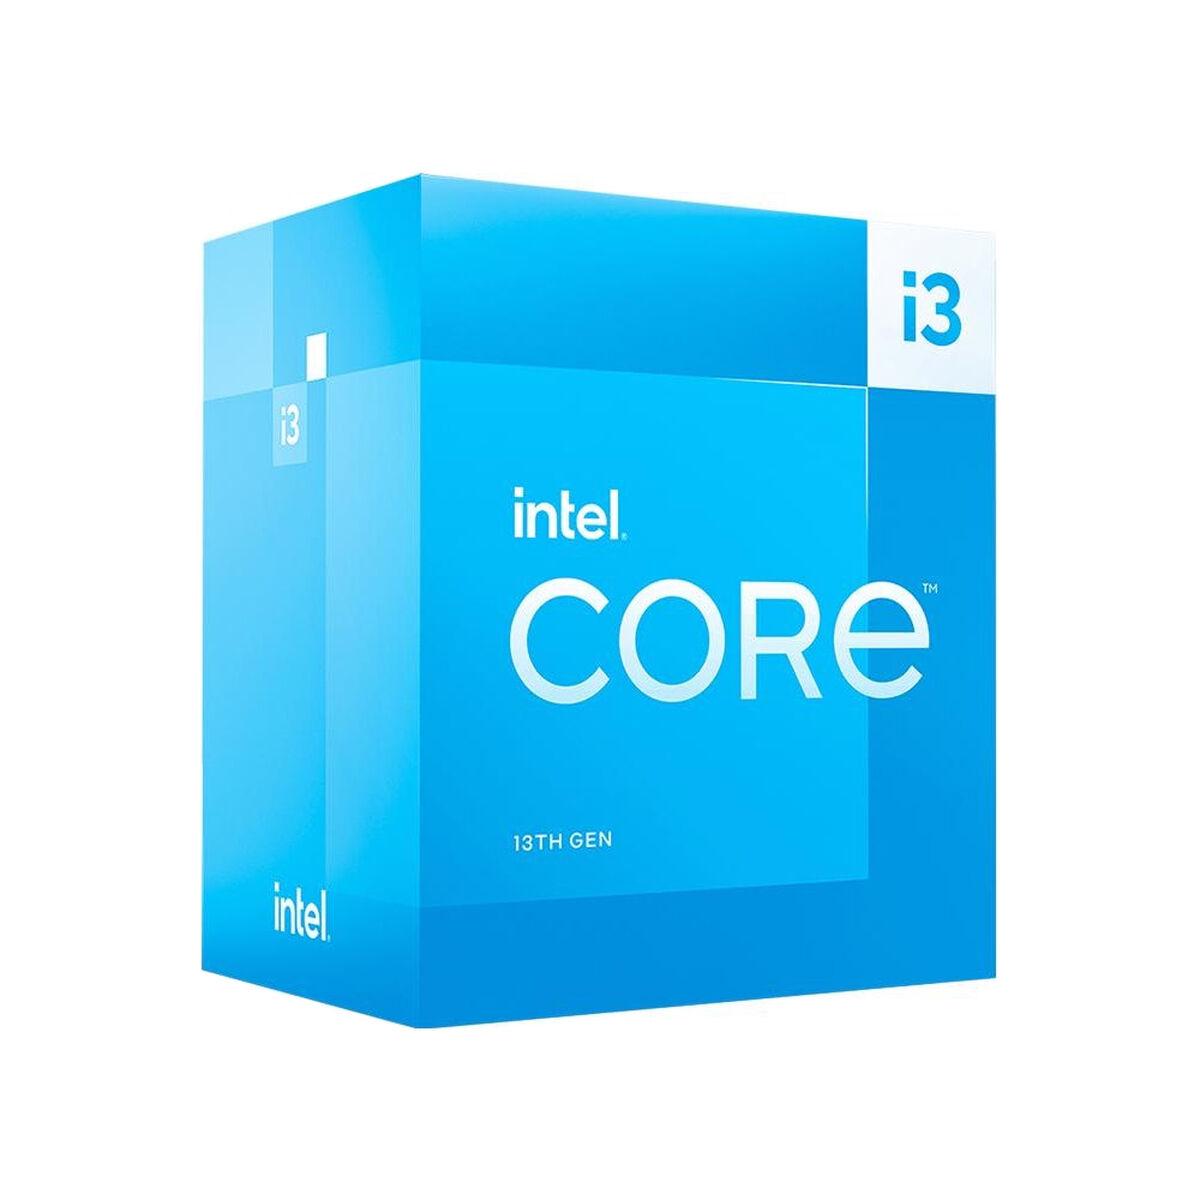 Billede af Processor Intel Core i3 13100F hos Boligcenter.dk